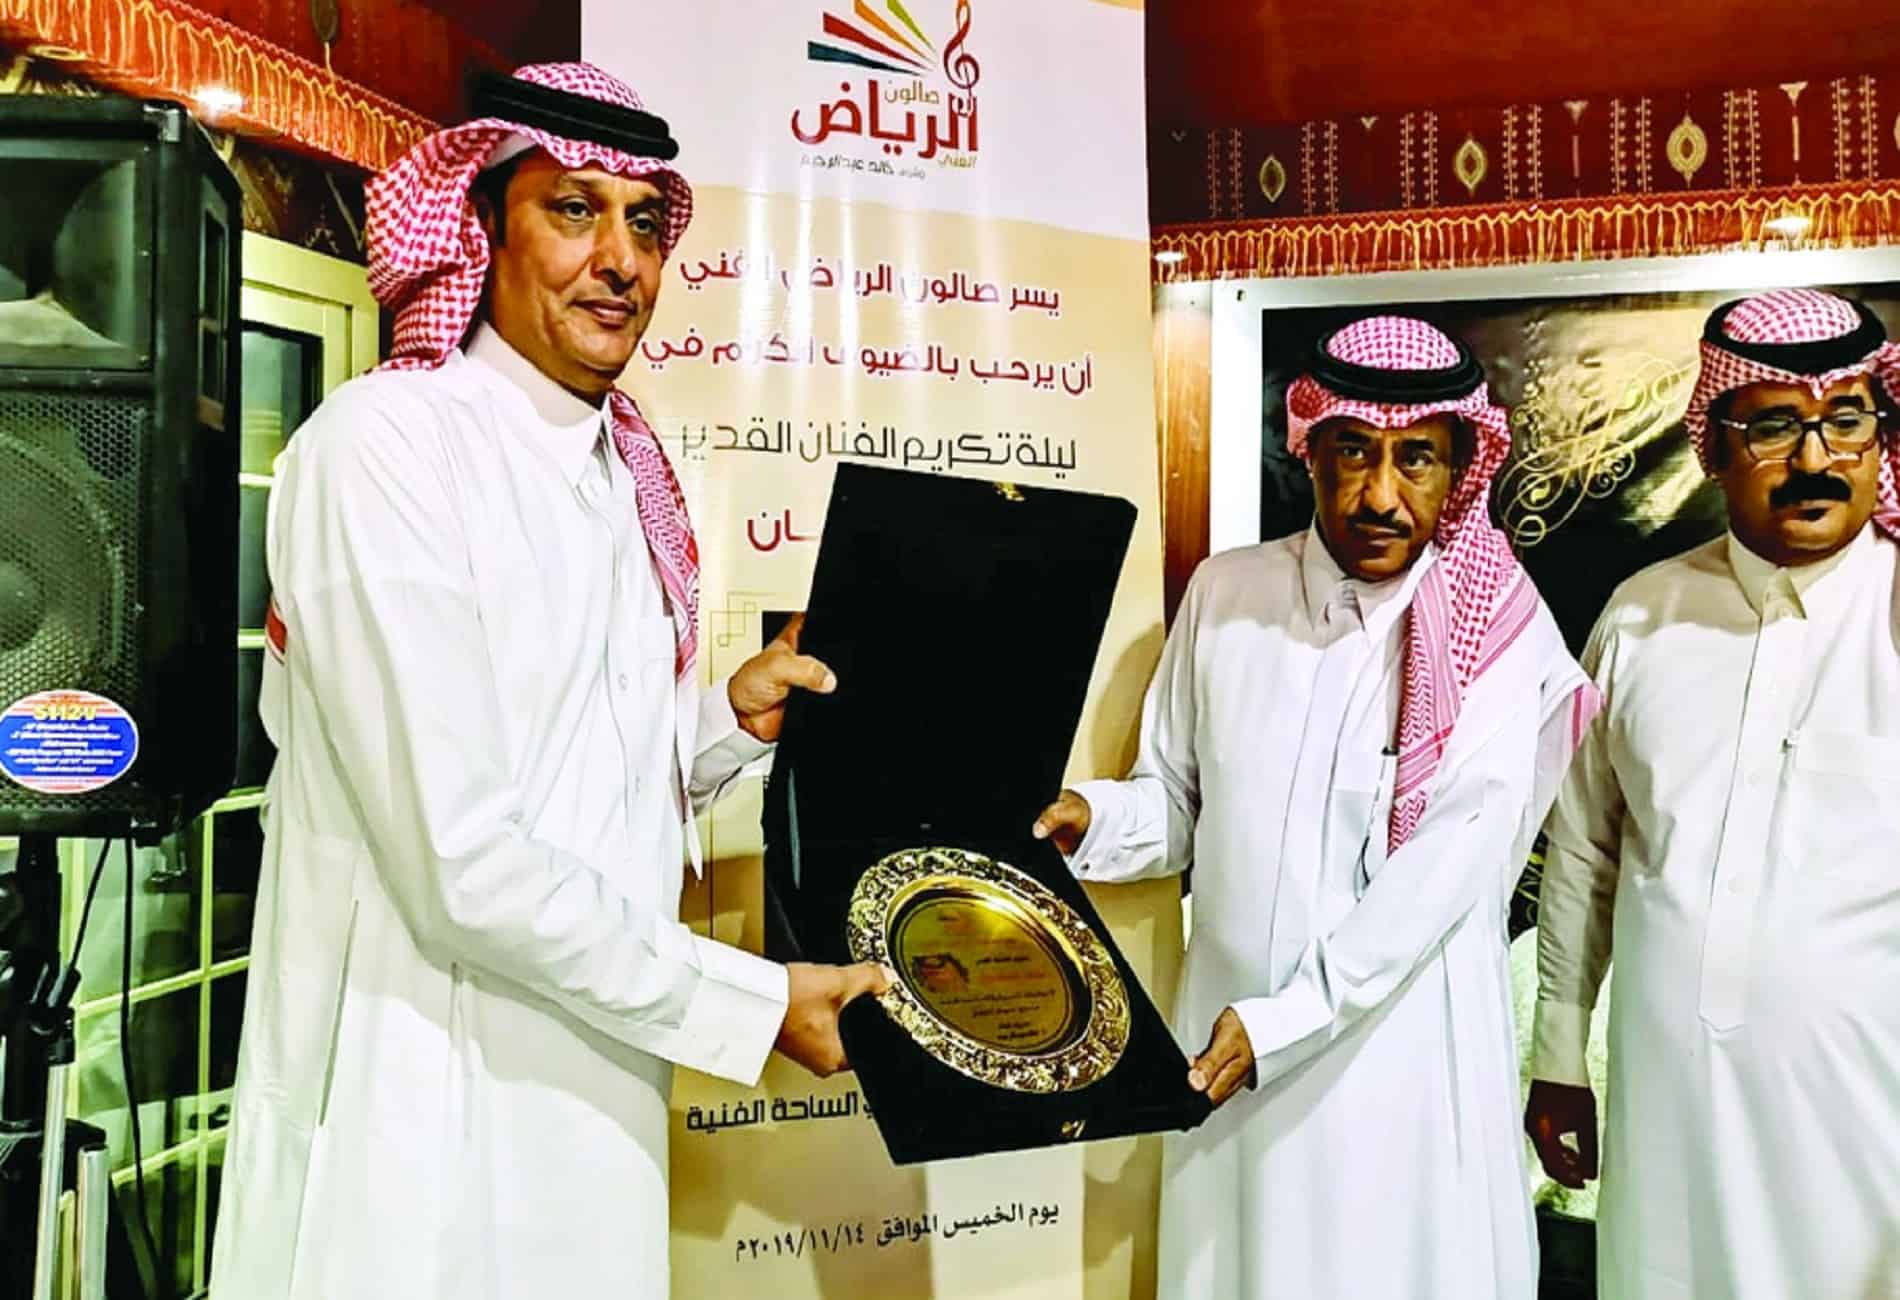 الفنان خالد عبد الرحيم يروي قصة تأسيس "صالون الرياض الفني"